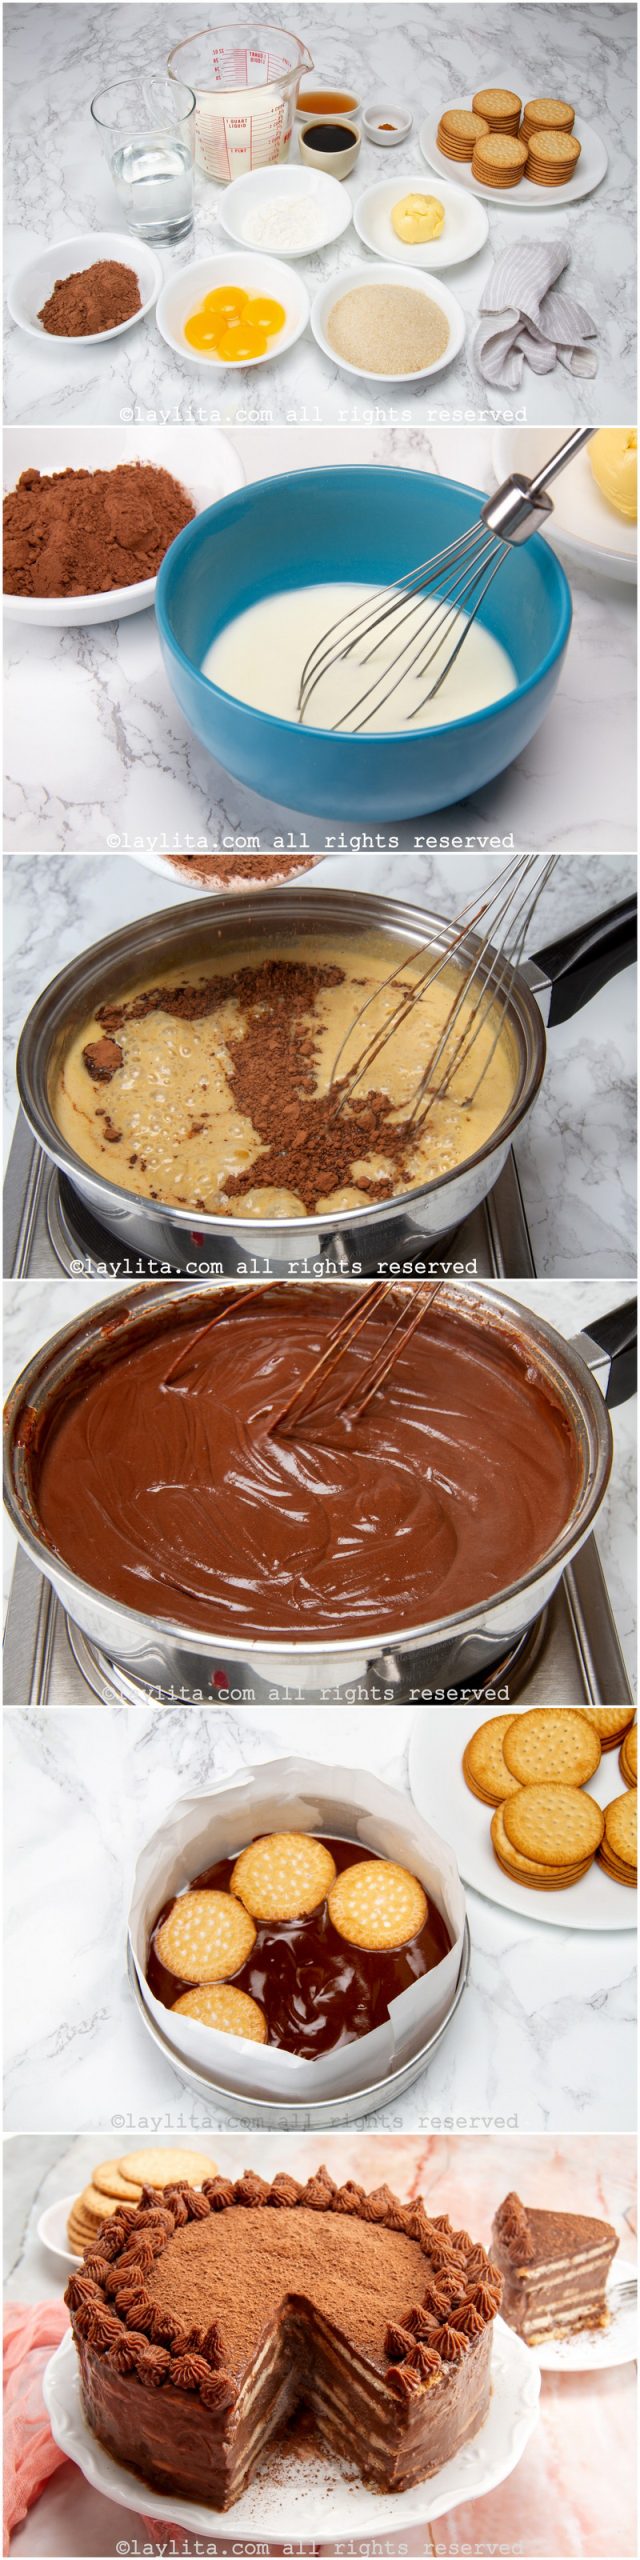 Fotos do passo a passo para preparar a marquesa de chocolate